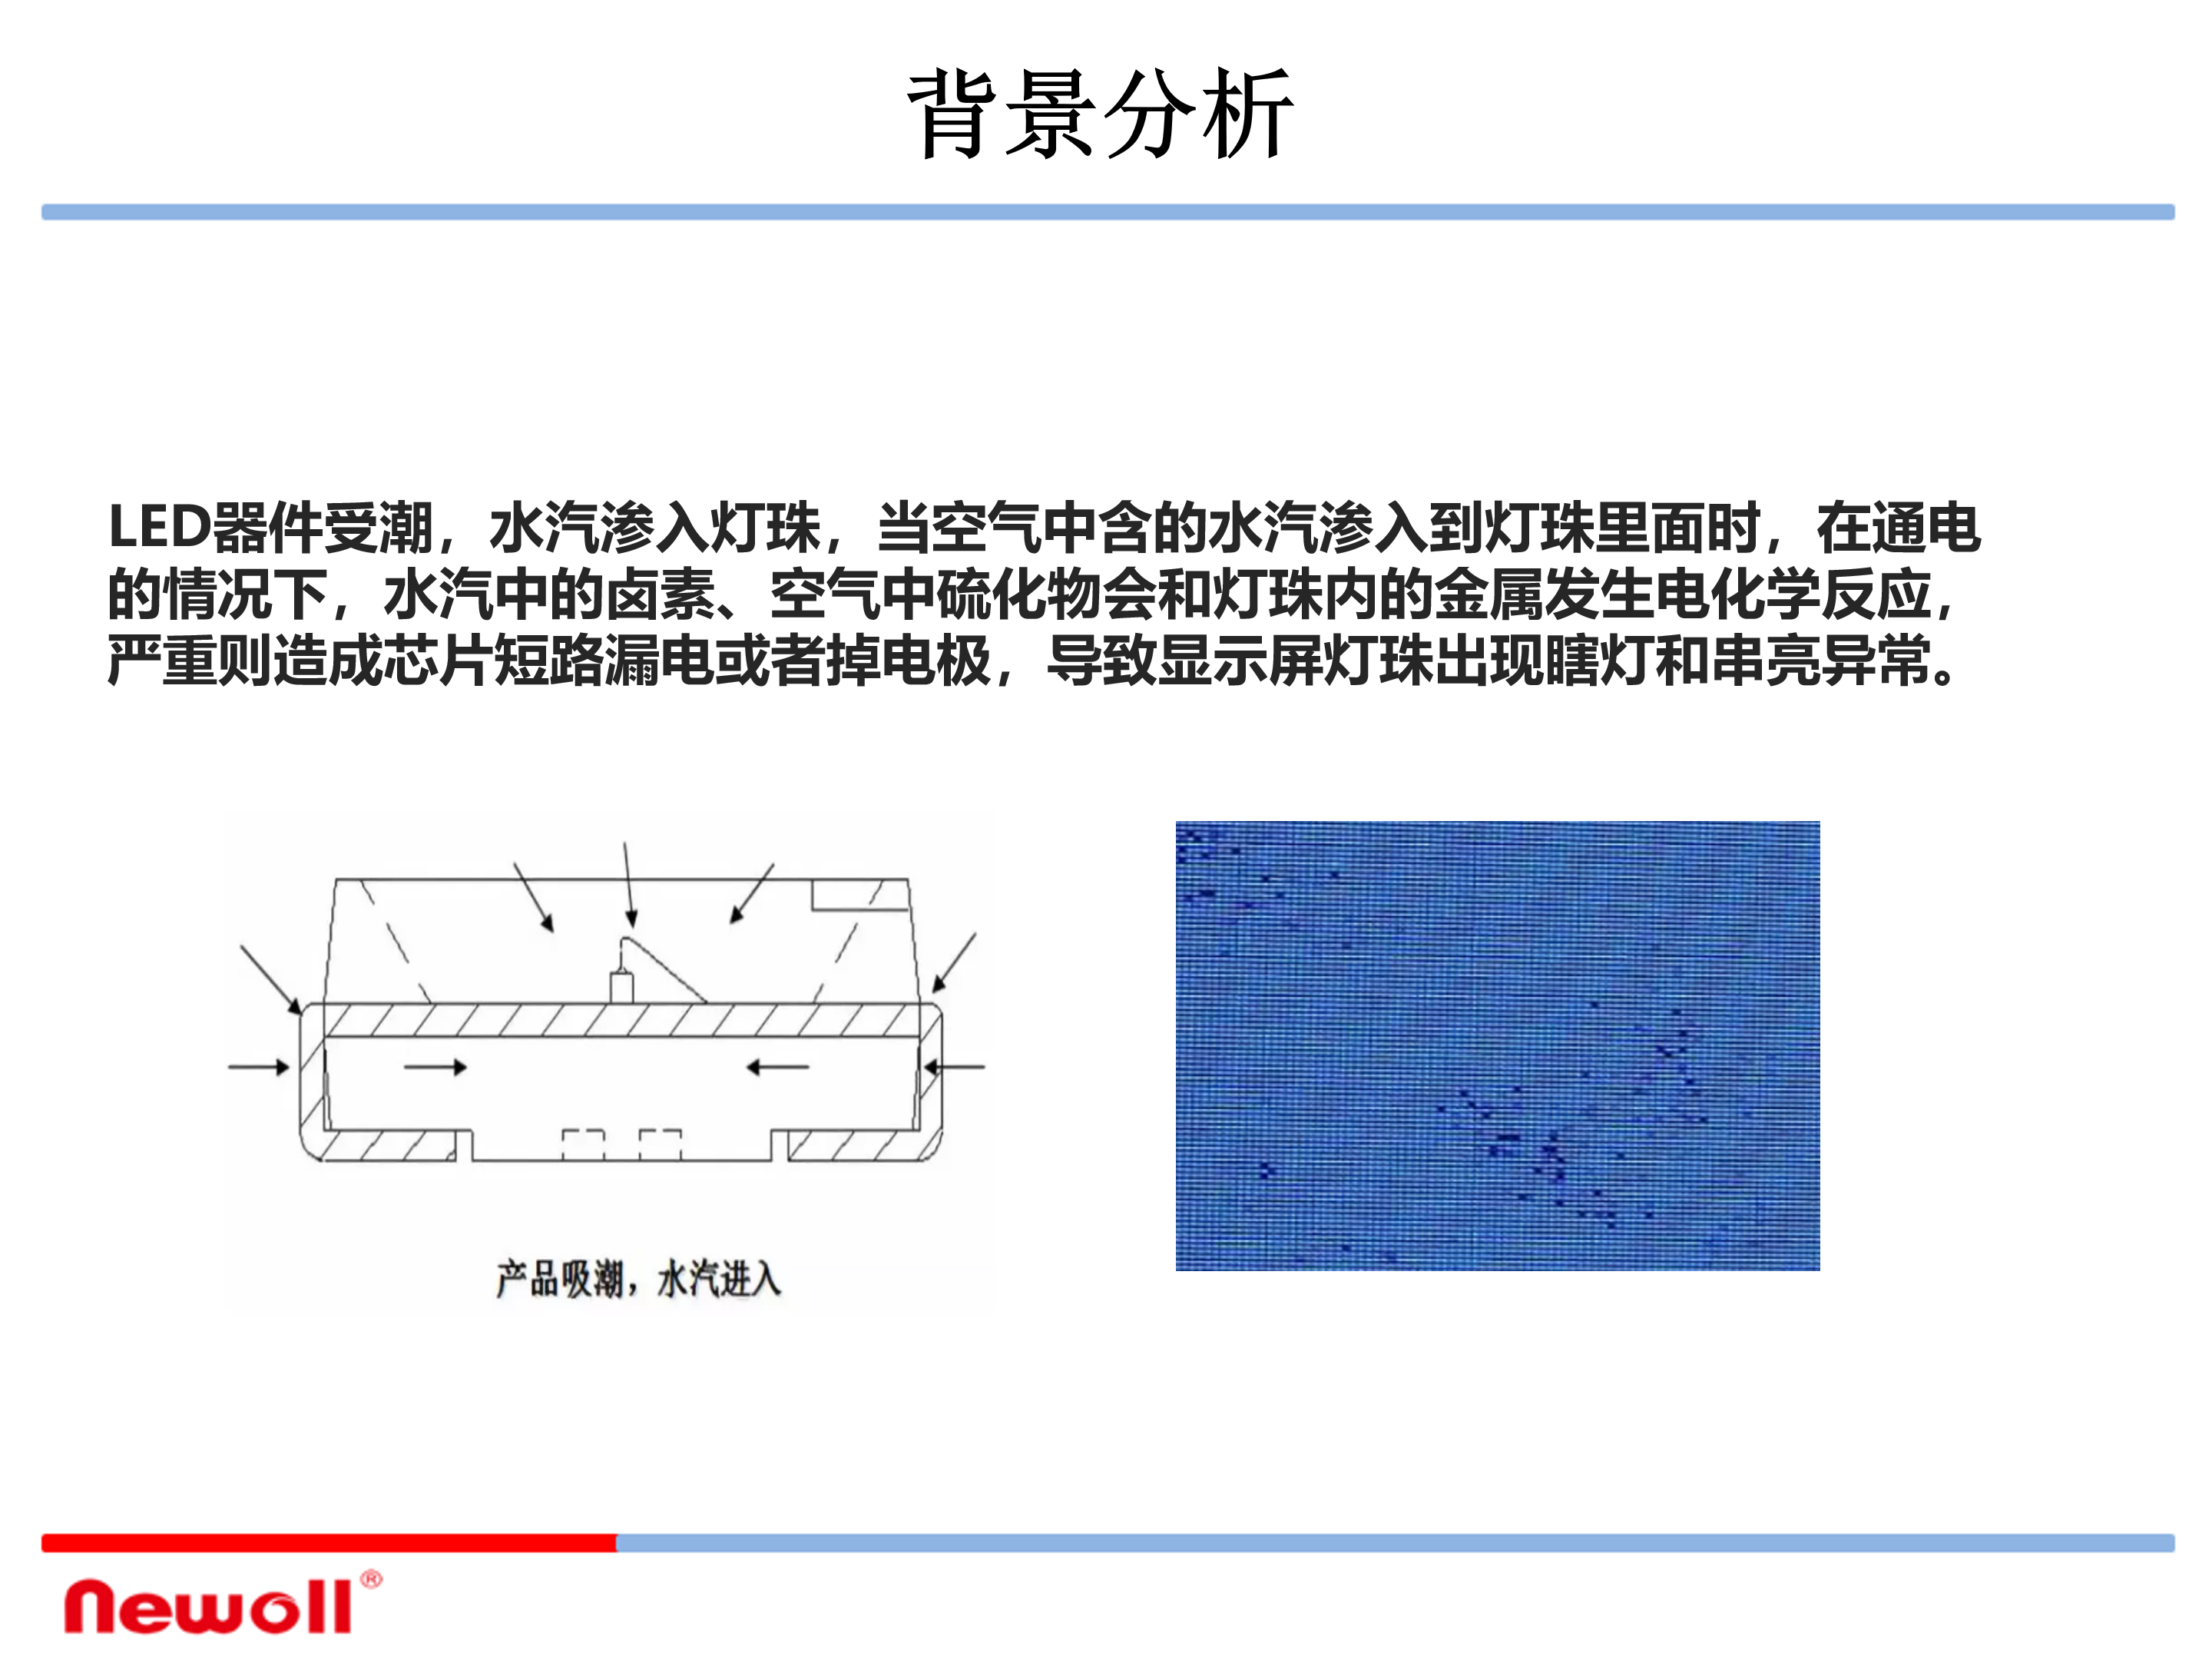 氟碳成膜镀膜材料LED显示应用方案_04